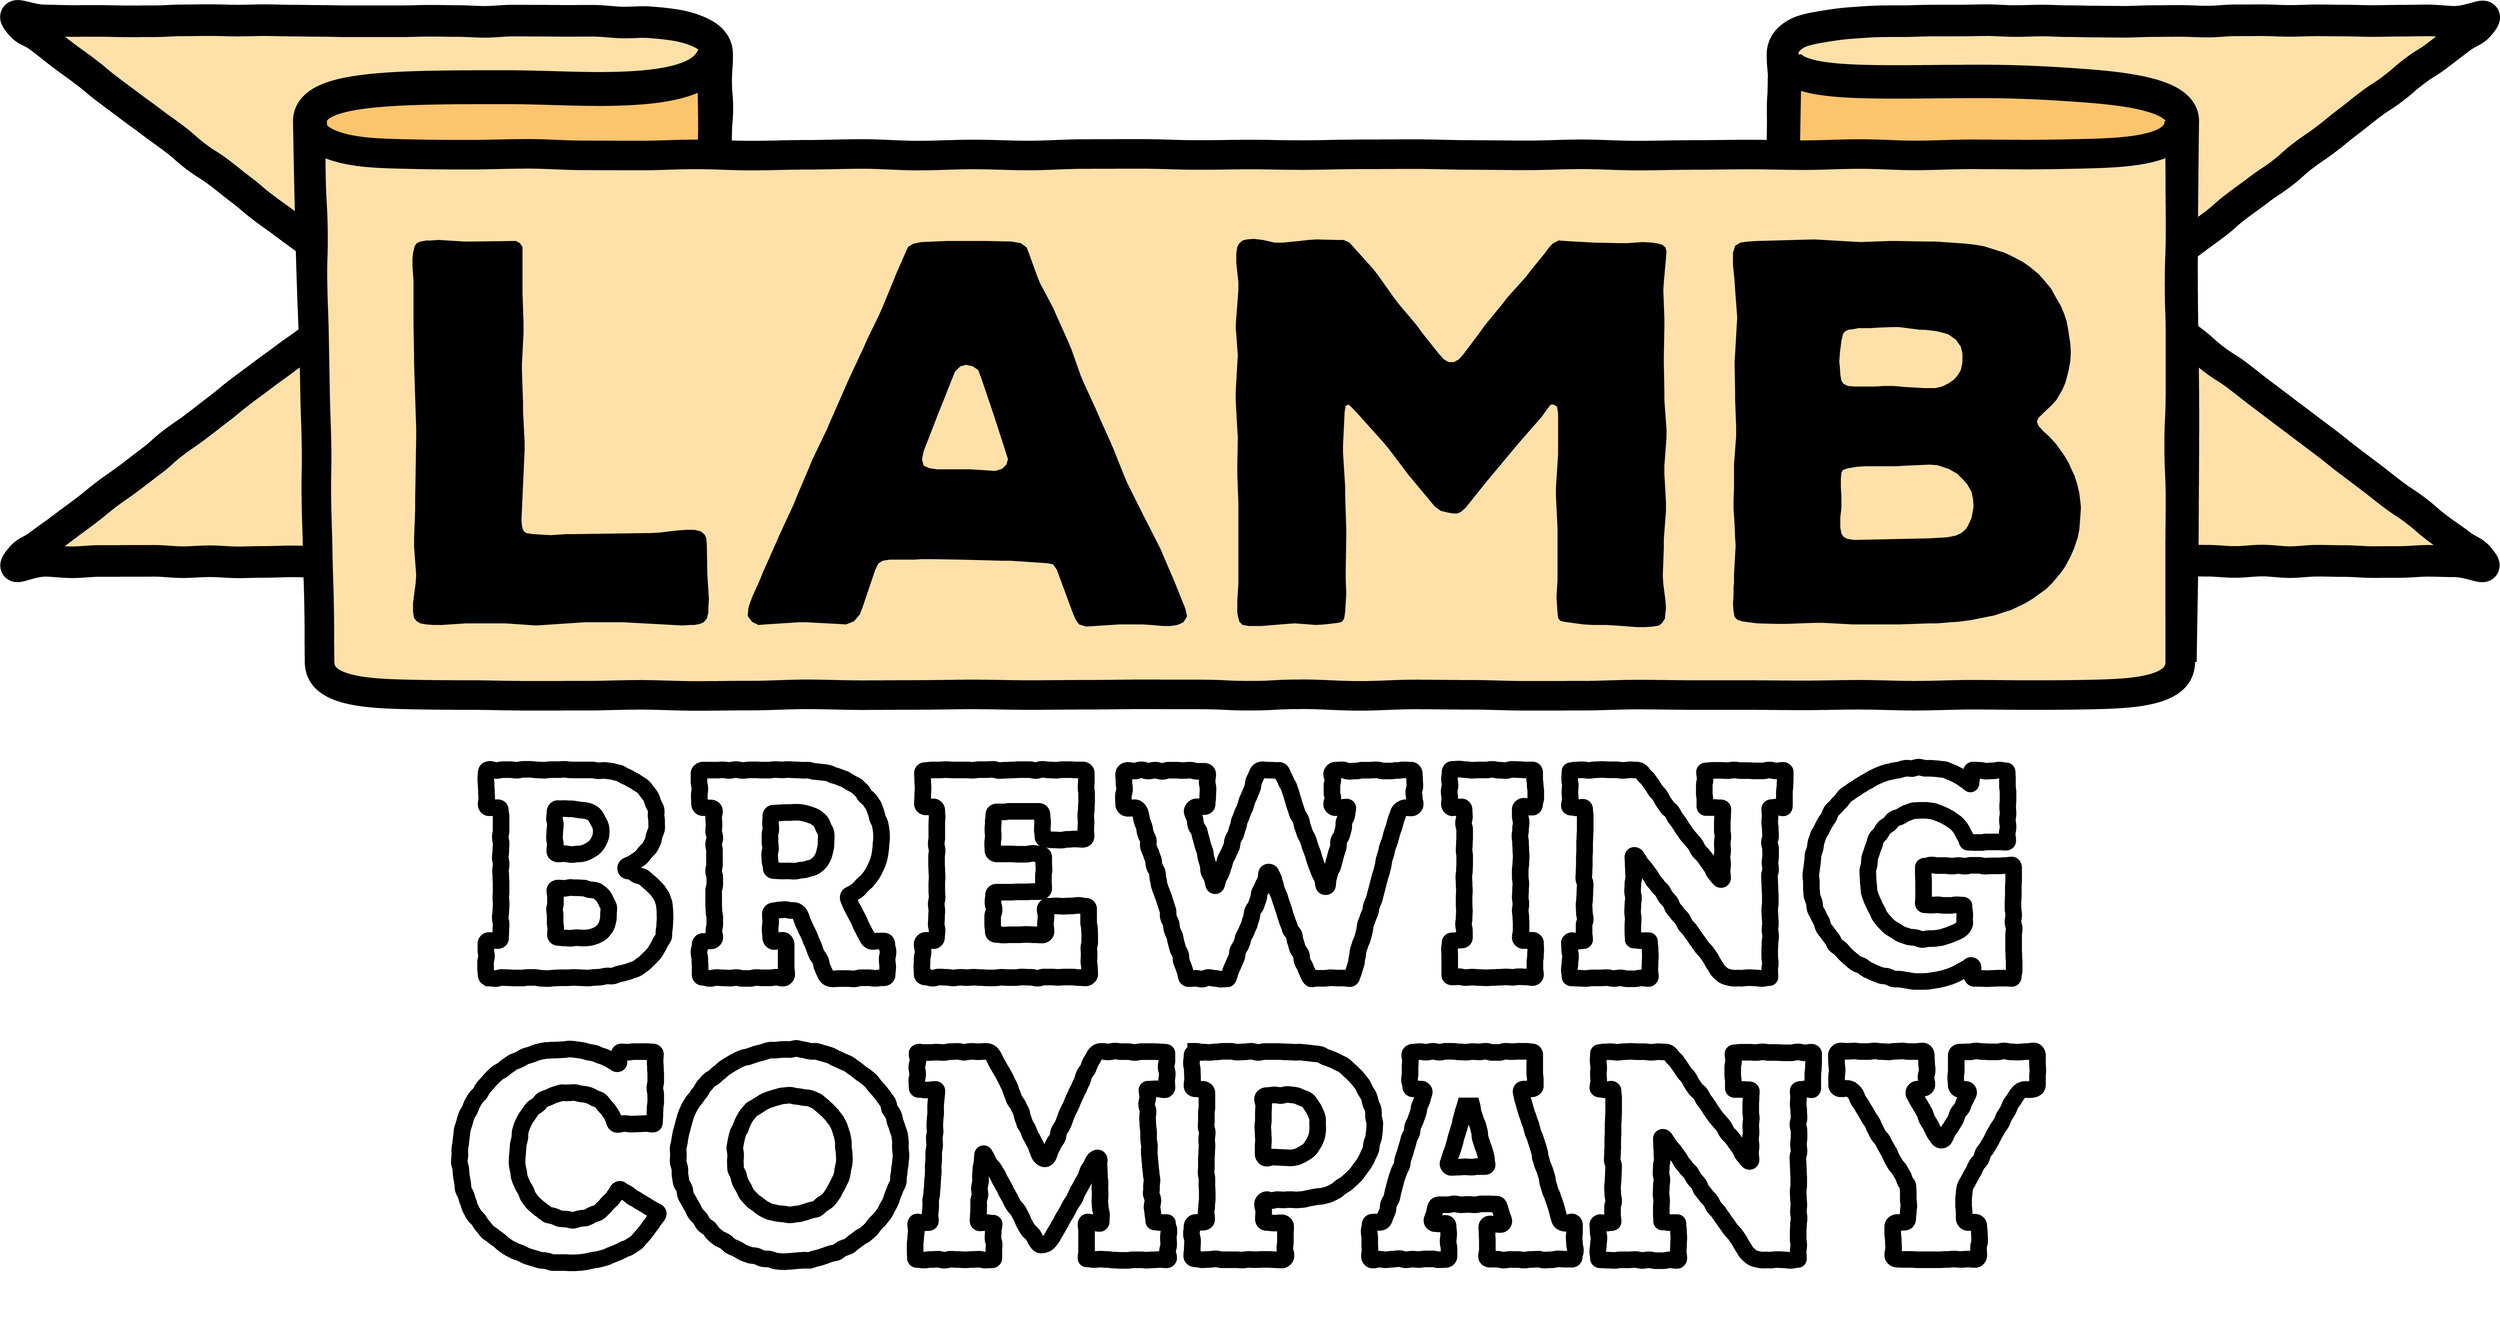 Lamb Brewing Company